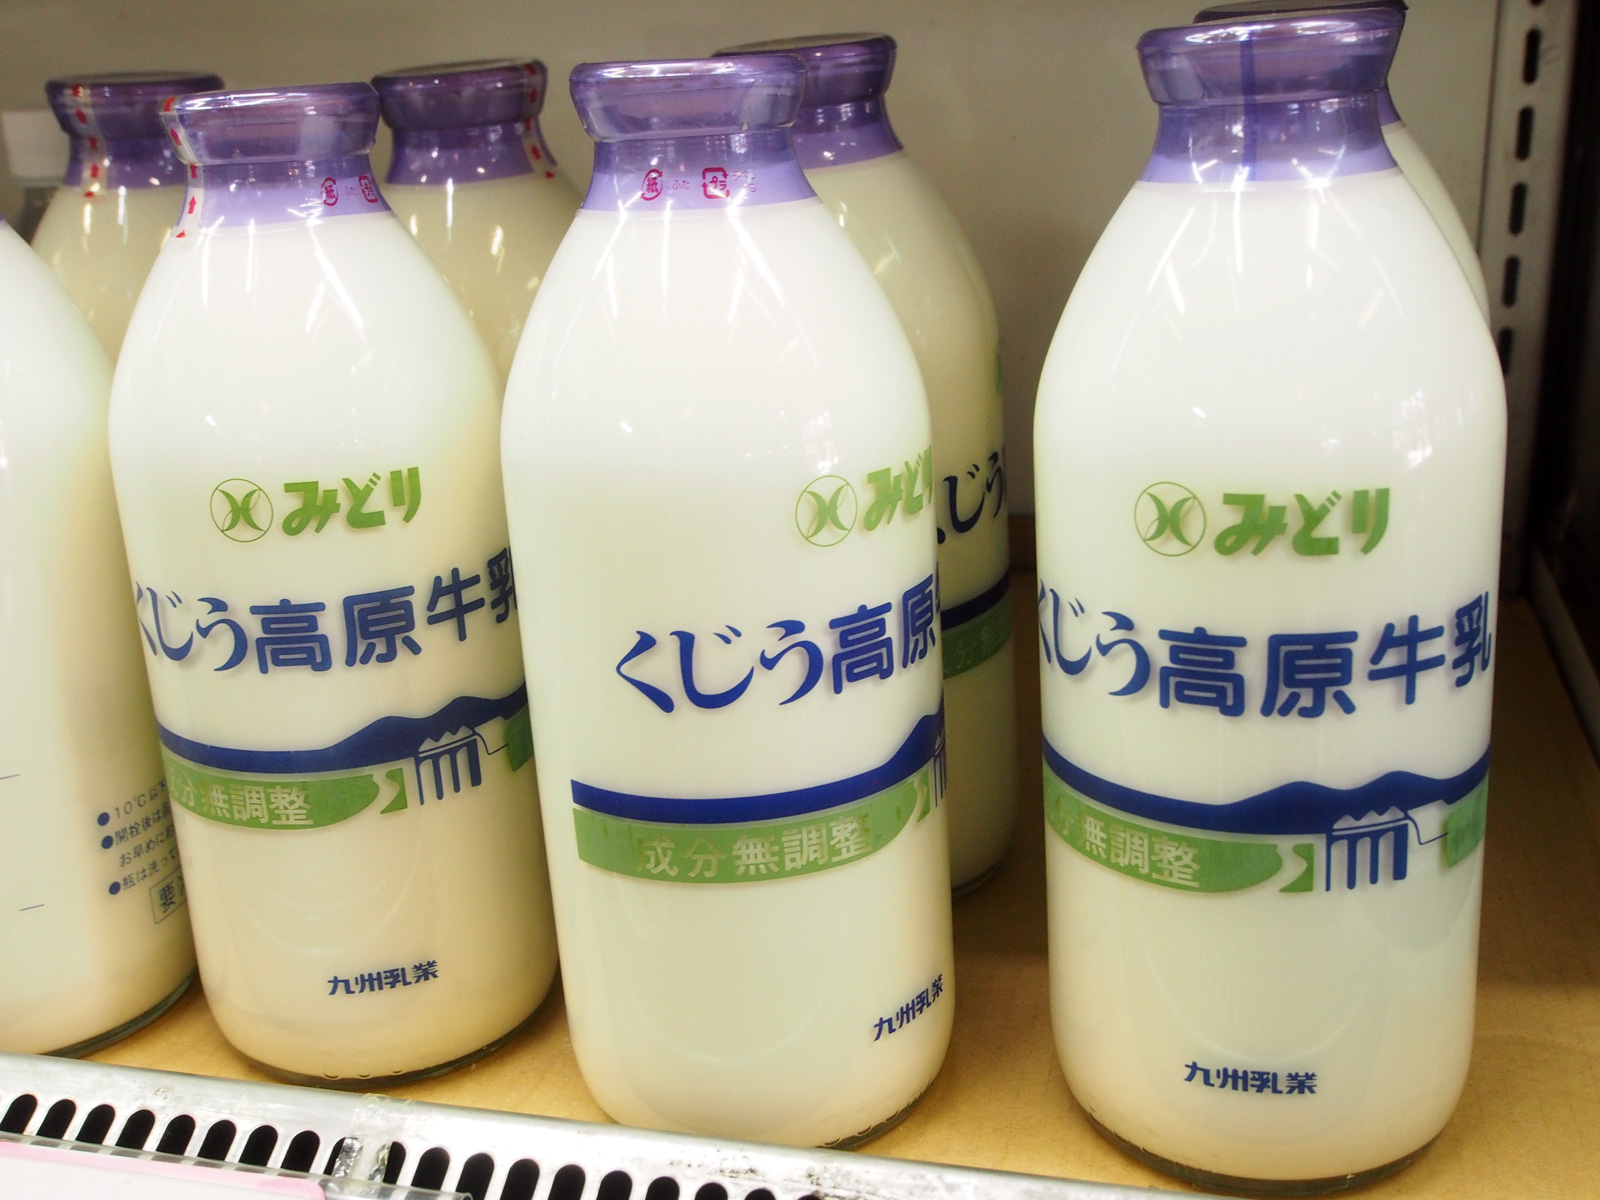 ファイル:Oita midori milk.jpg - Wikipedia